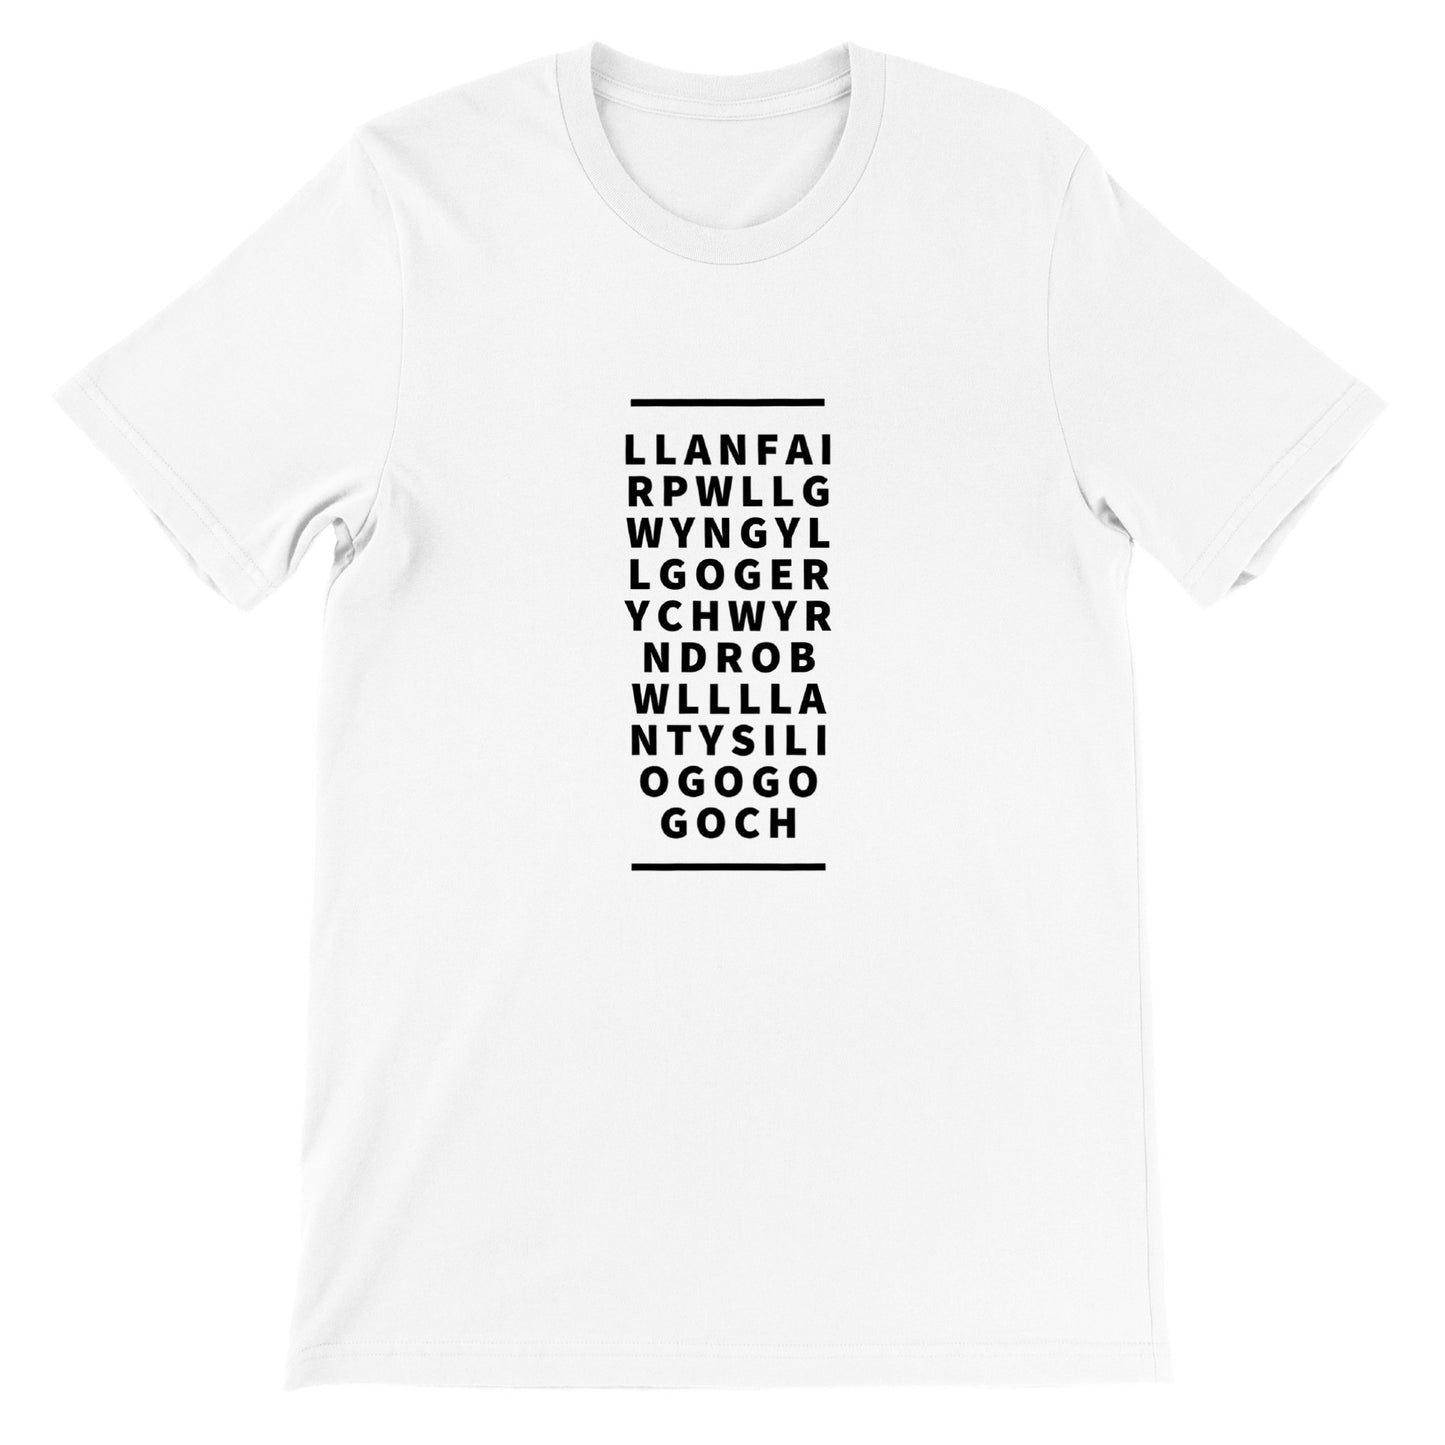 llanfairpwllgwyngyllgogerychwyrndrobwllllantysiliogogogoch - Premium Unisex Crewneck T-shirt